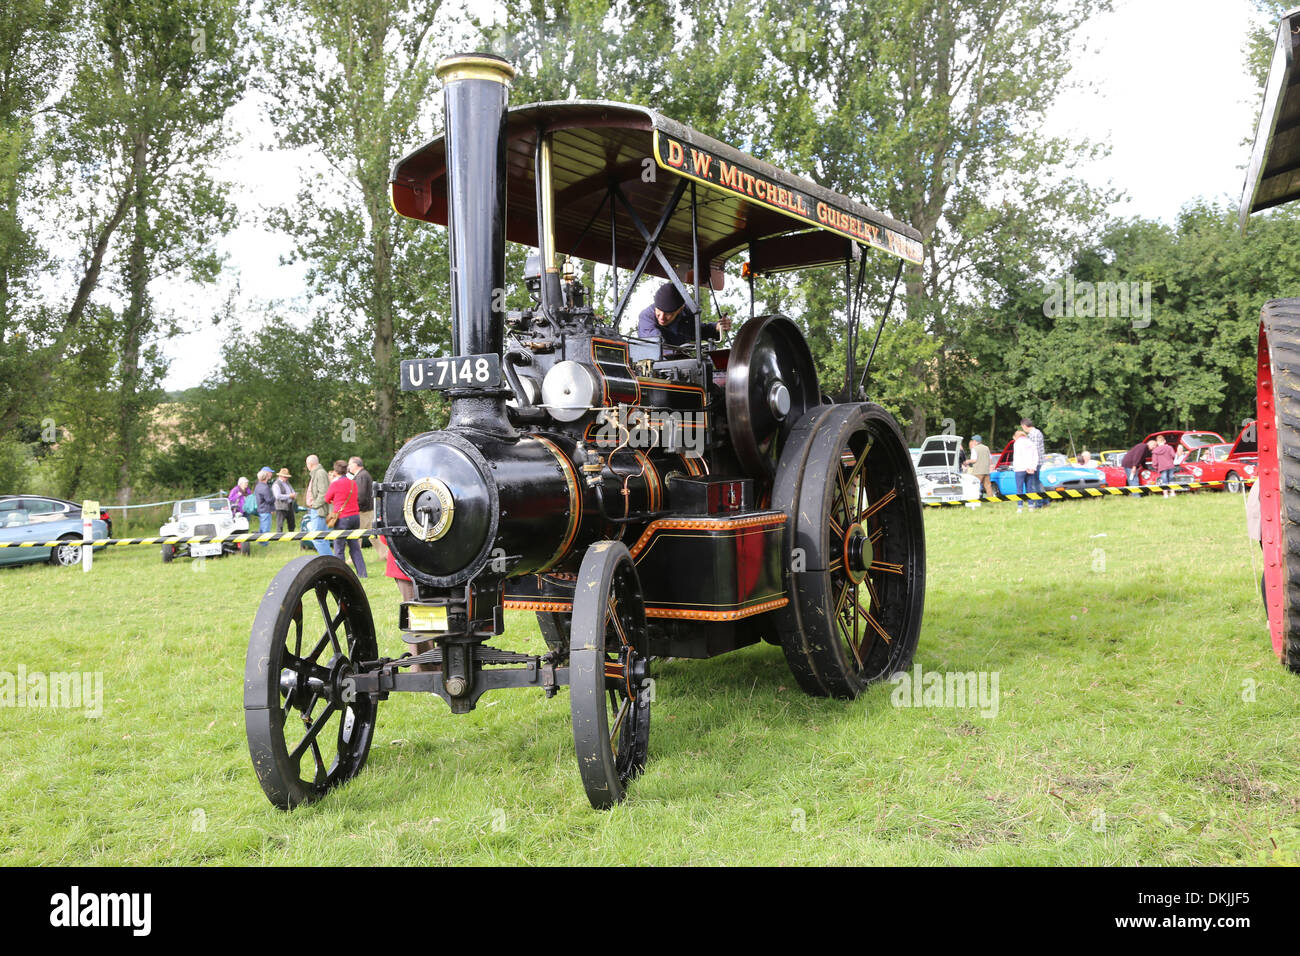 Klassische Fahrzeuge, Lokomobile und Showground Organe bei Knotford Nook, Otley. -Otley Vintage Transport Extravaganza Stockfoto